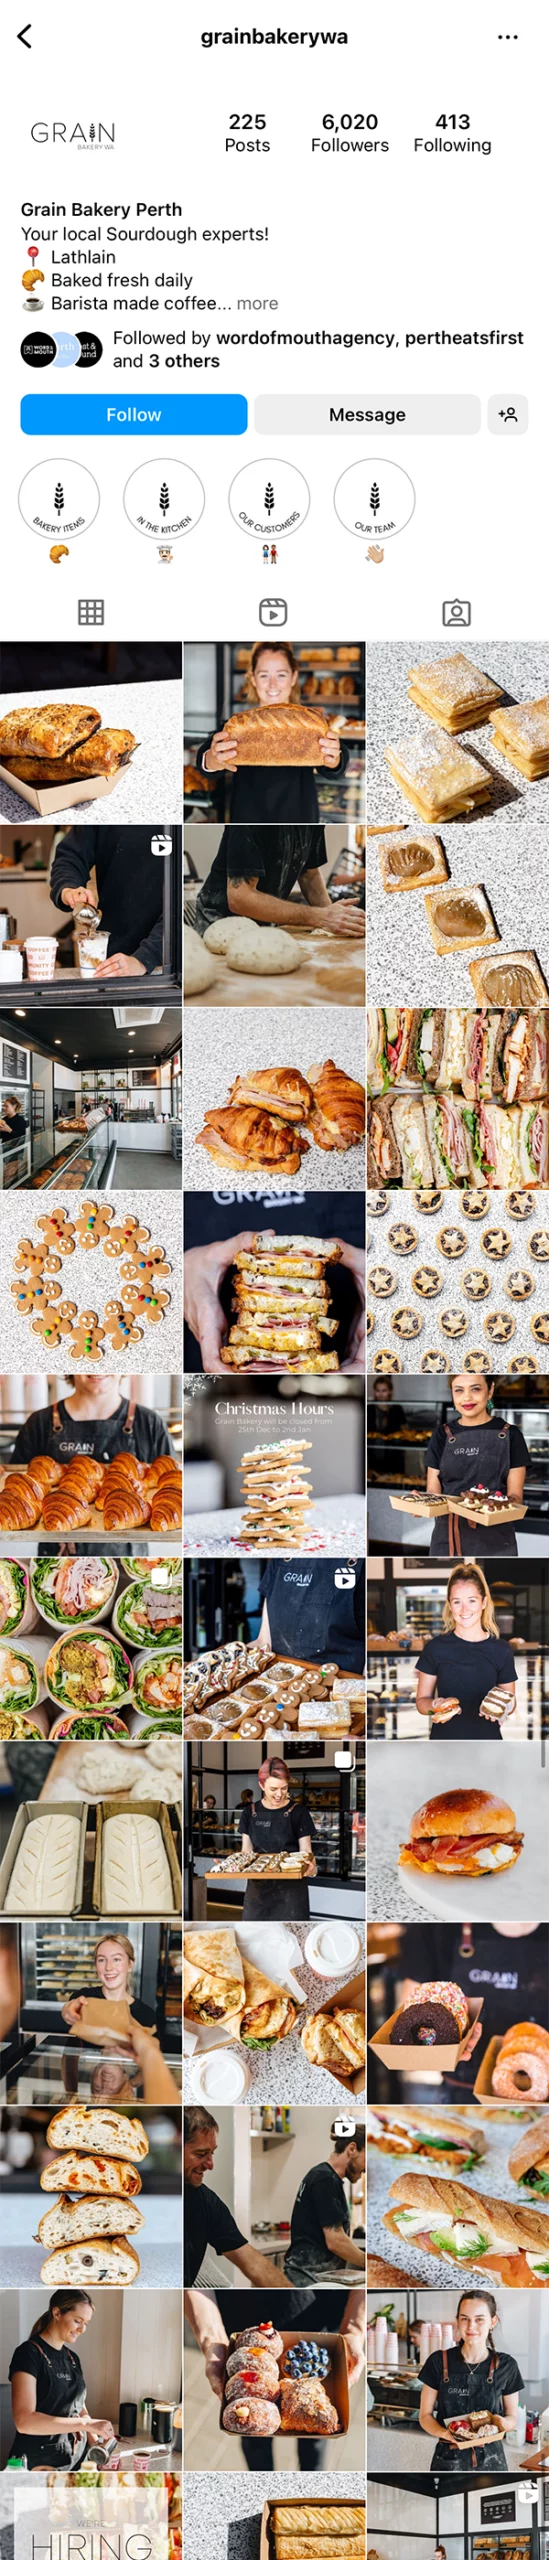 Grain Bakery Instagram